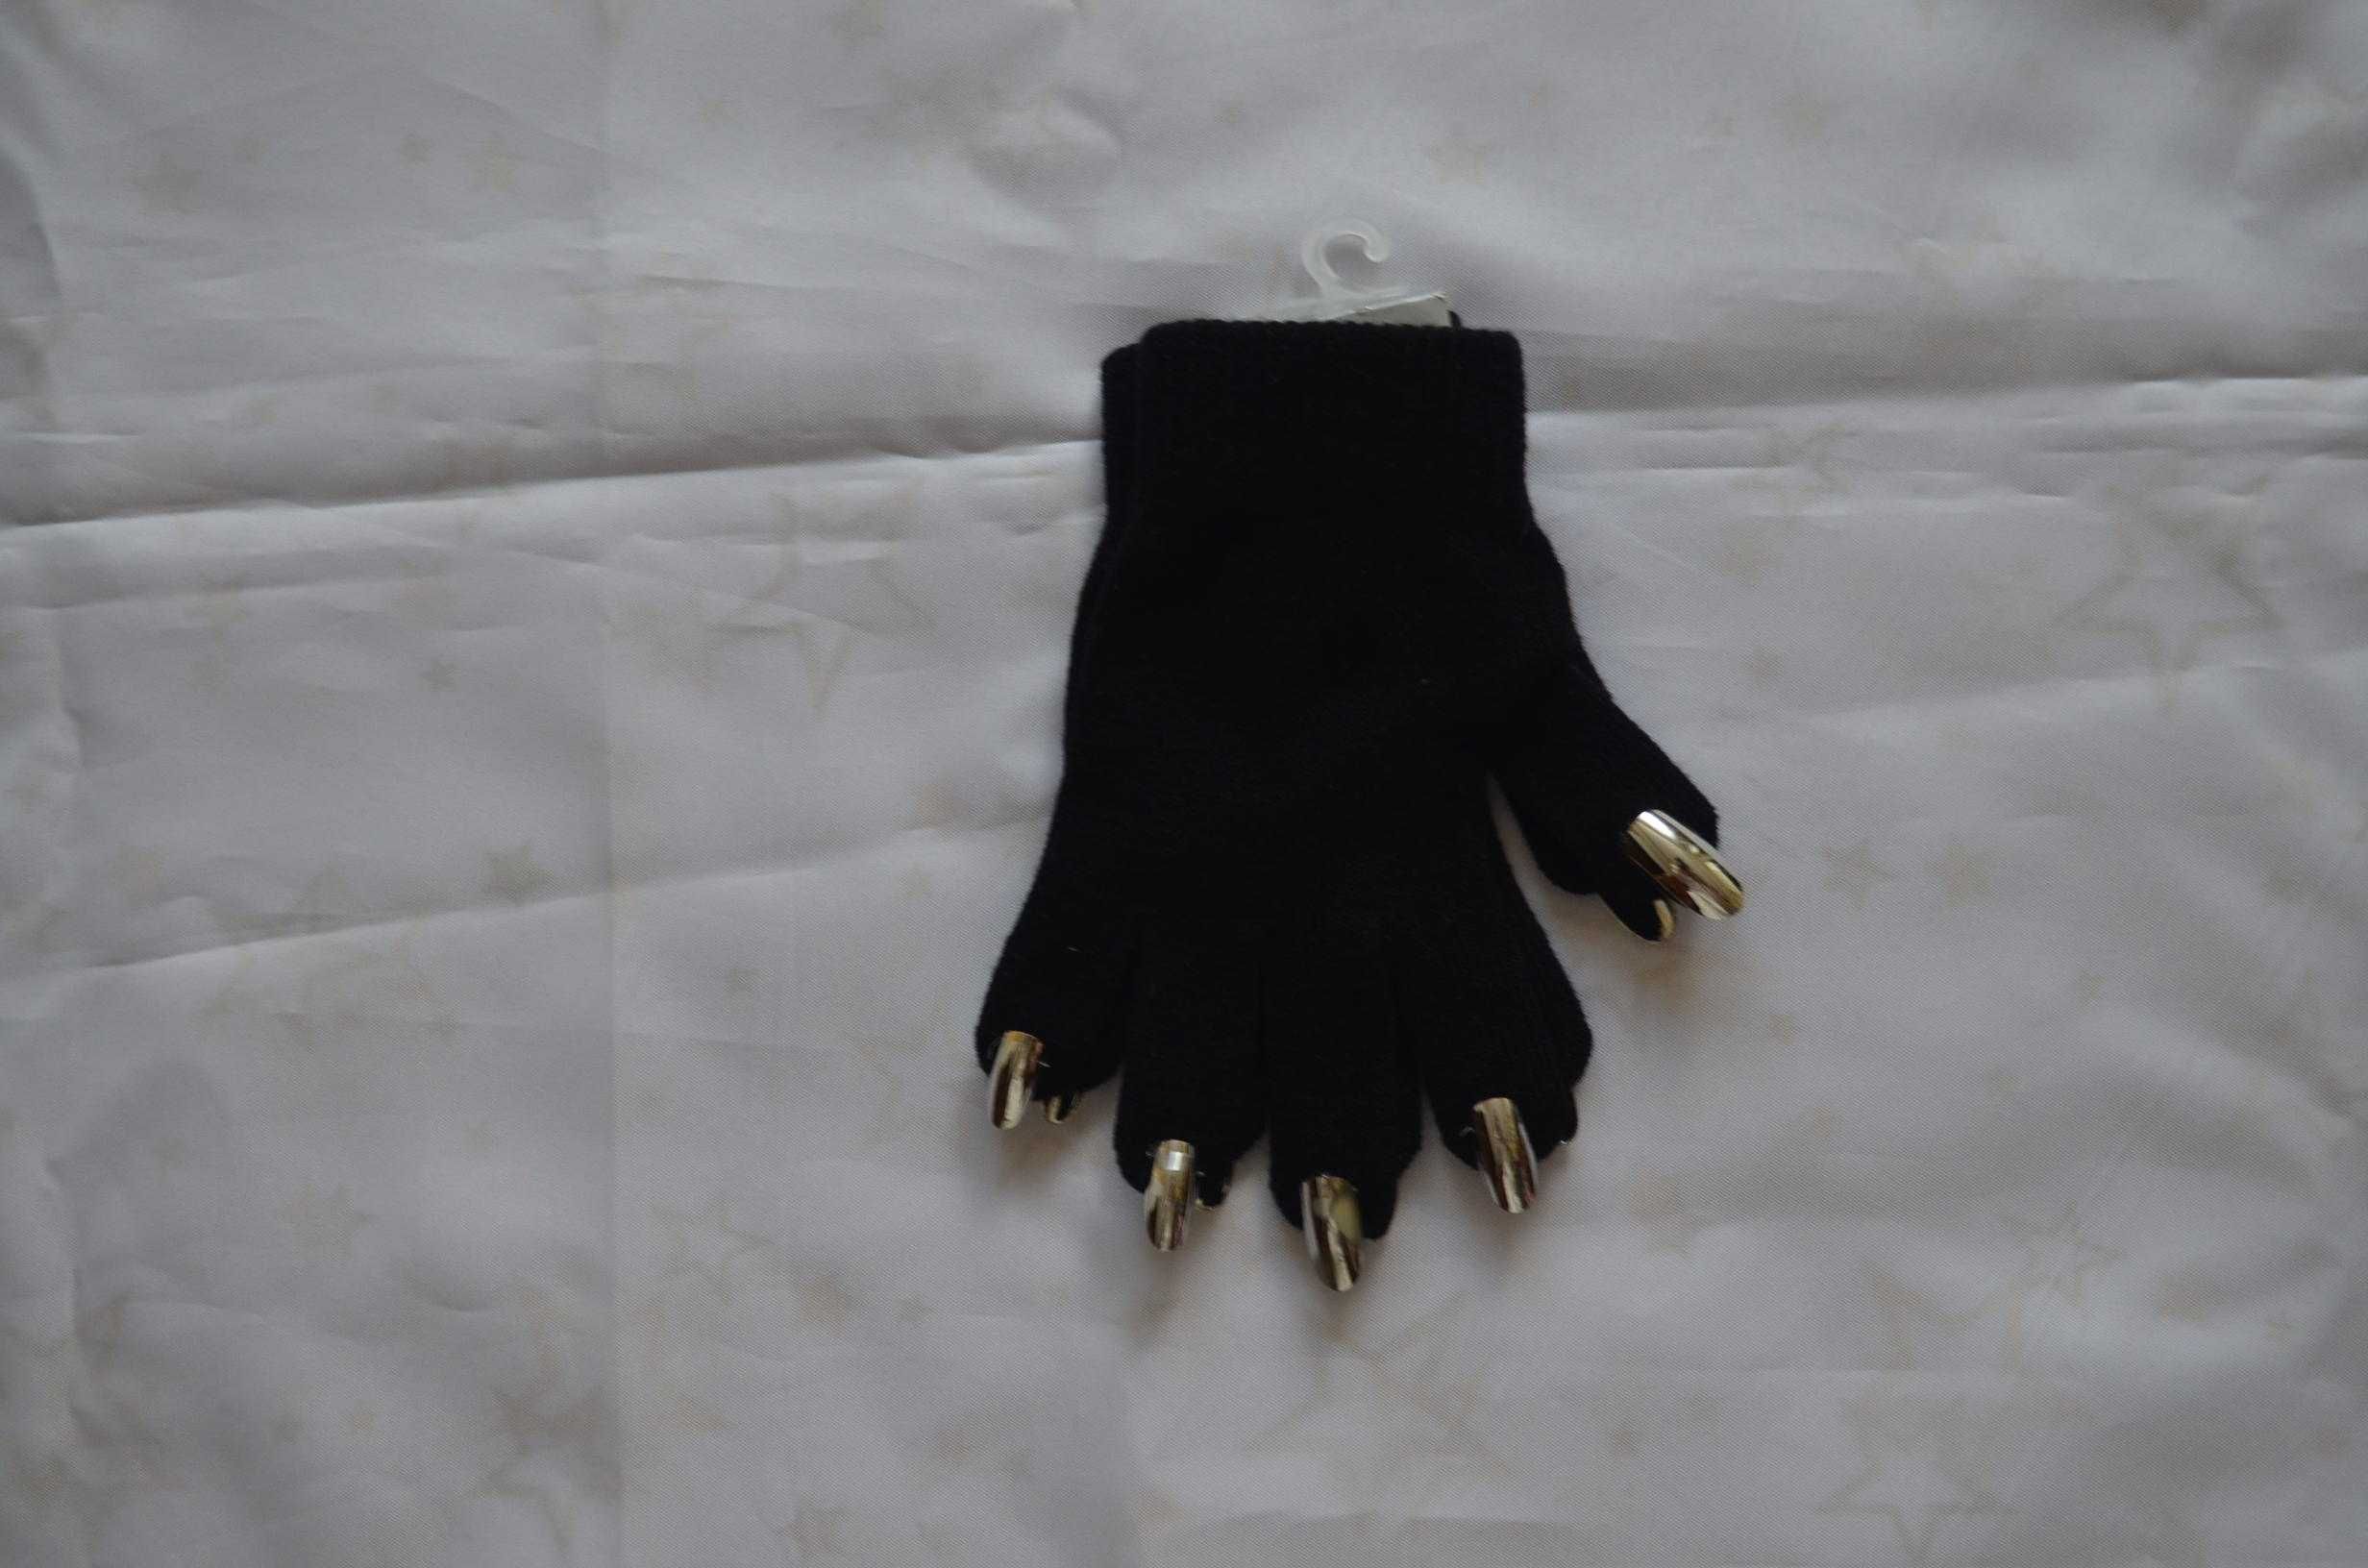 Handy vamp magic gloves Зручні вампірські чарівні рукавички з нігтями